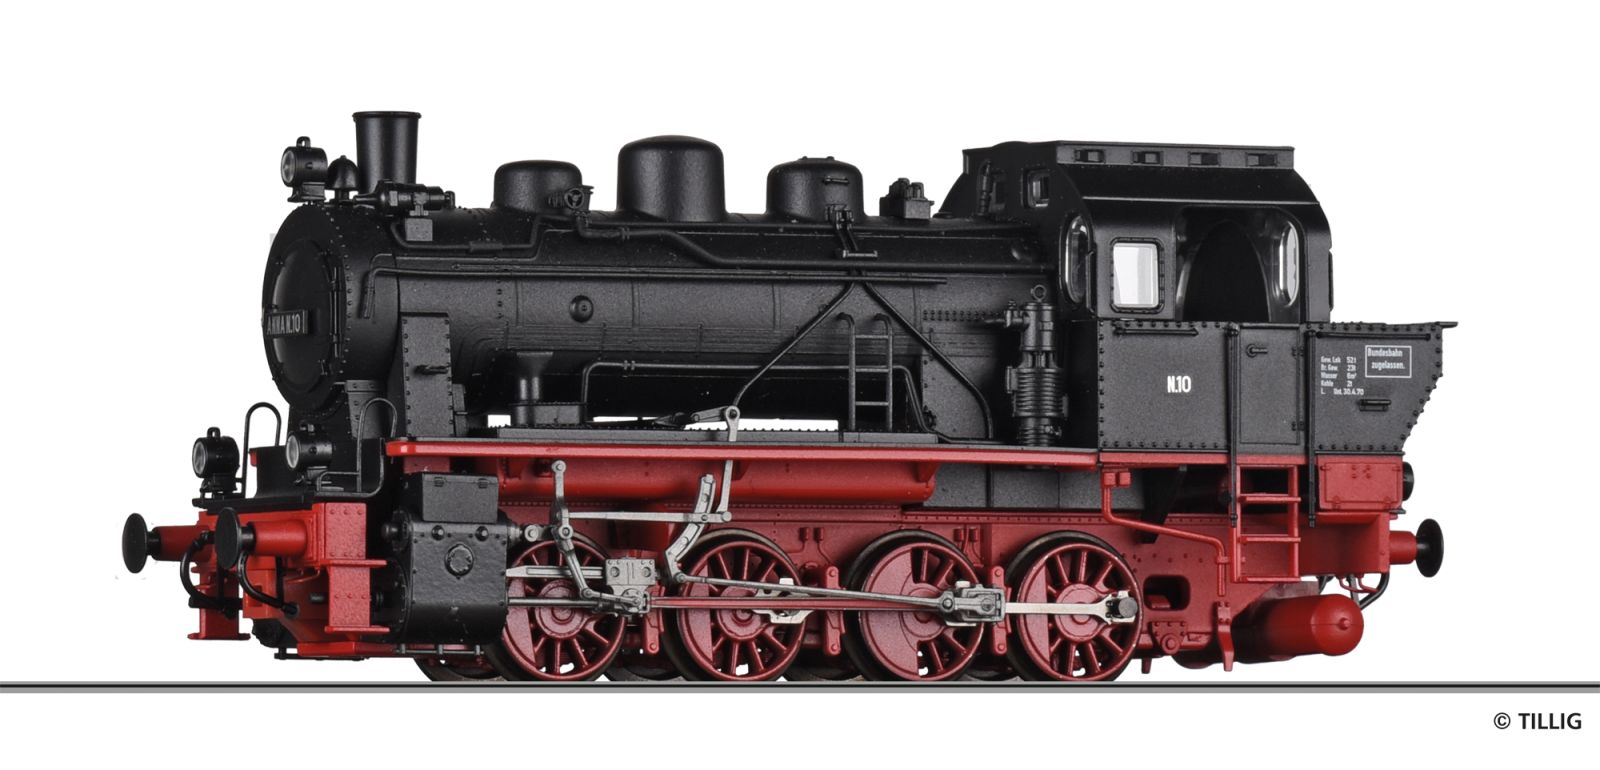 Dampflokomotive Werklok Grube „Anna“ Alsdorf